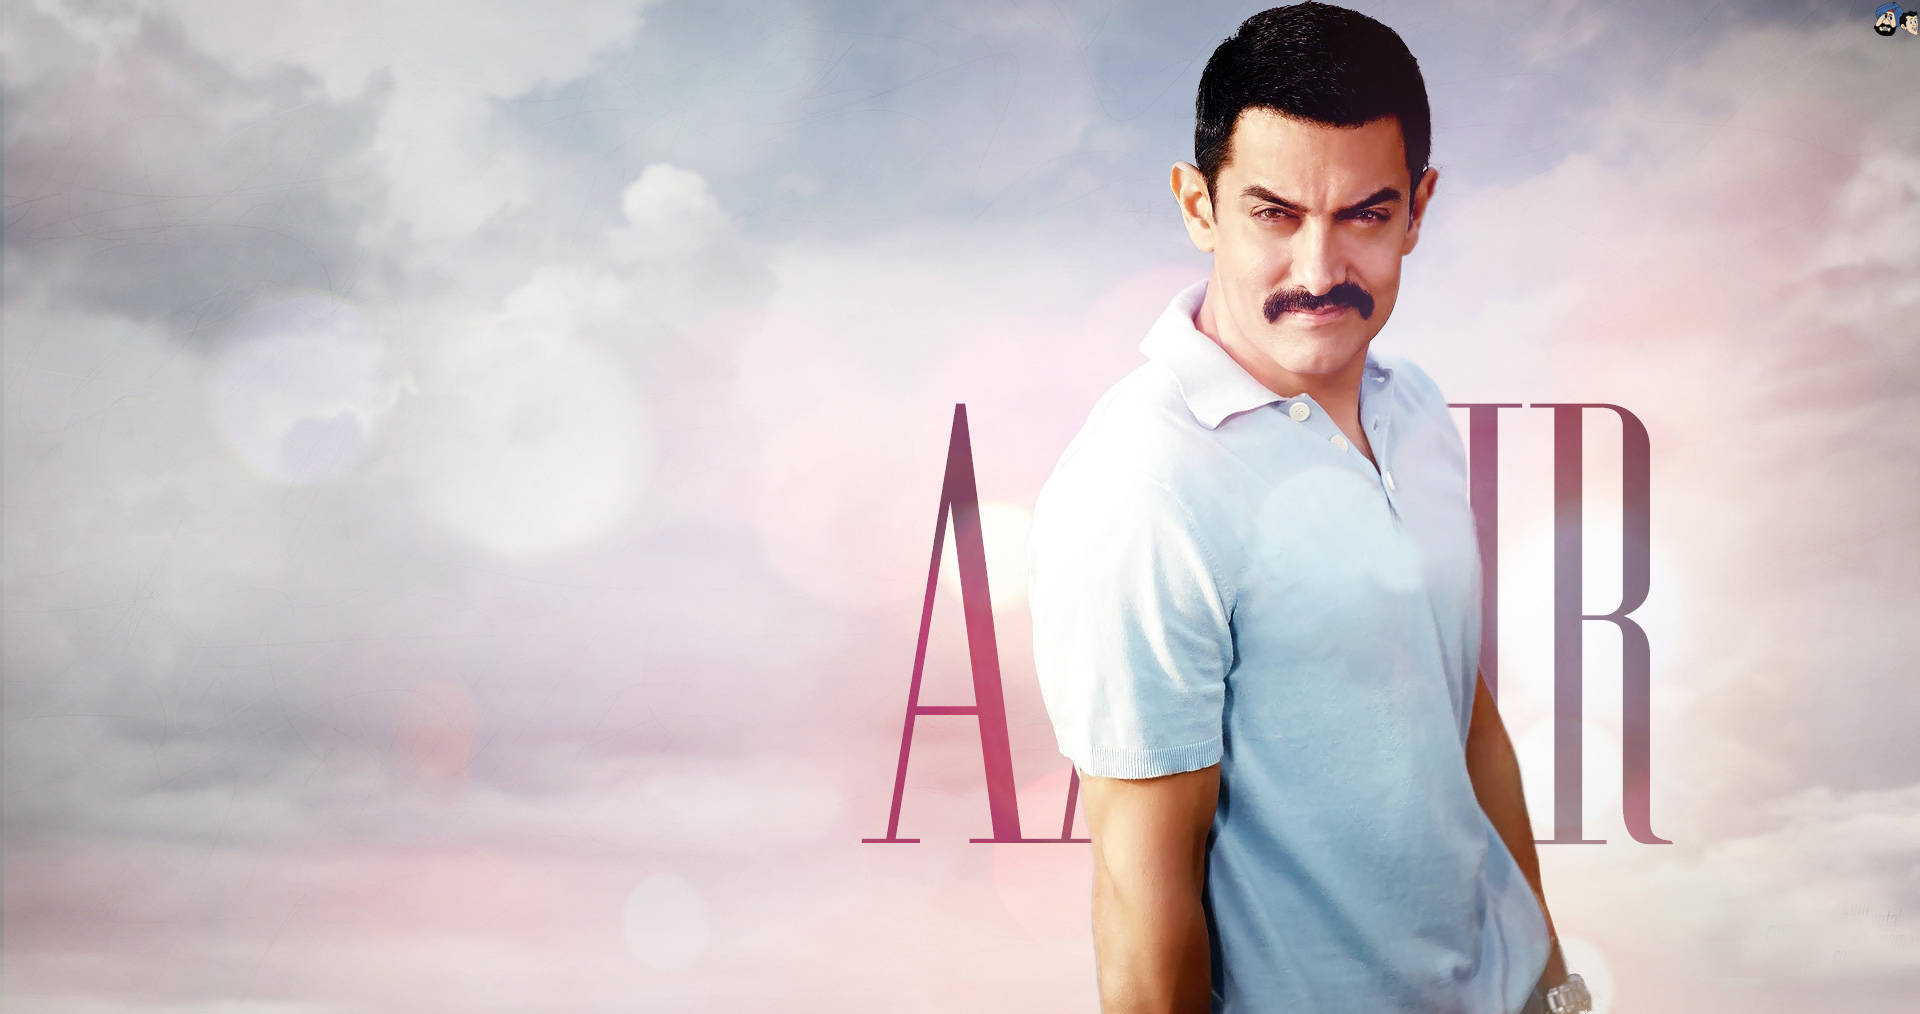 Aamirkhan Bollywood-superstar-schauspieler Wallpaper